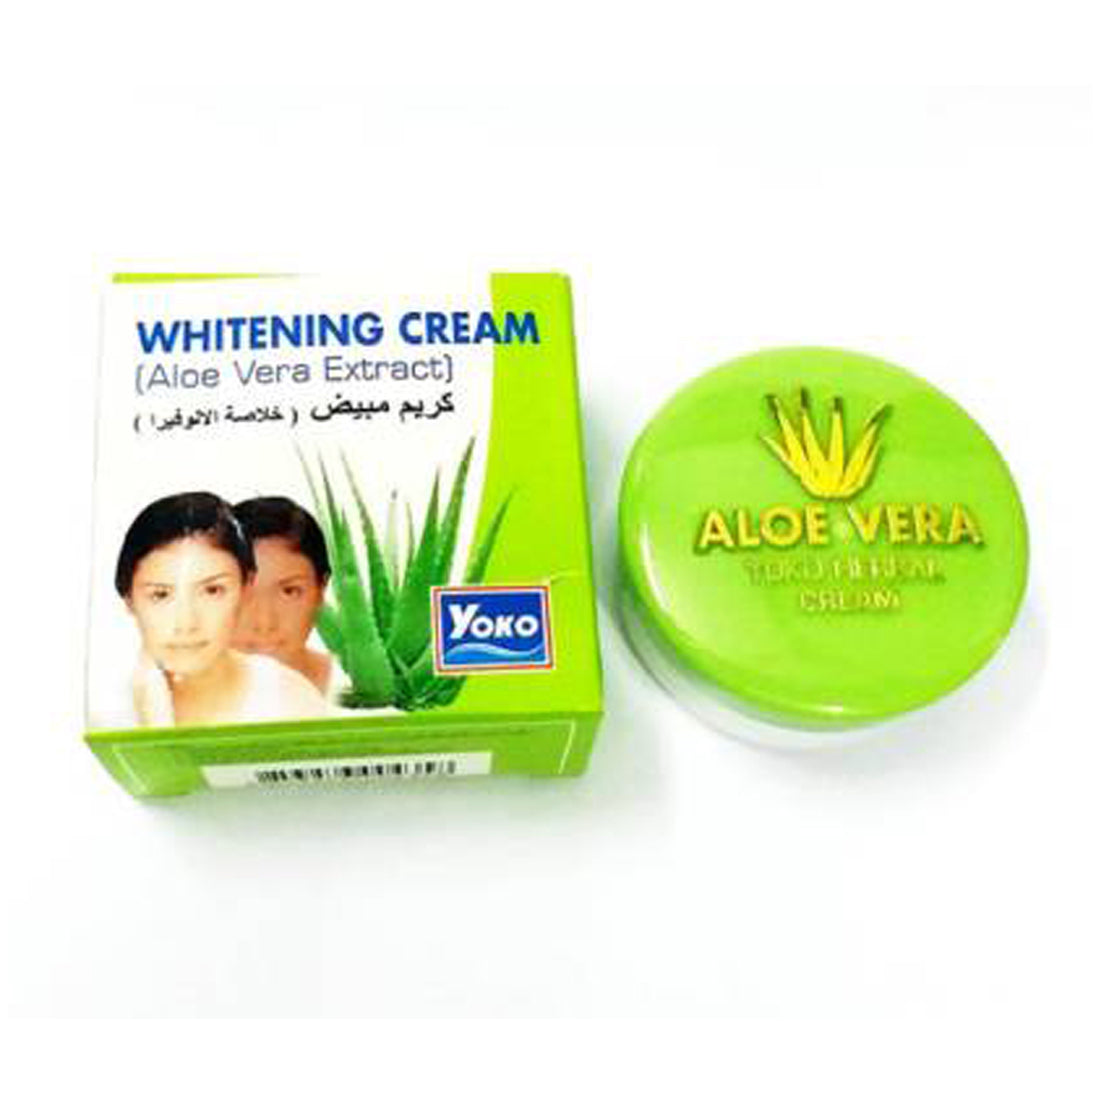 Yoko Aloe-Vera Extract White-ning Cream -4gm Pack Of 4